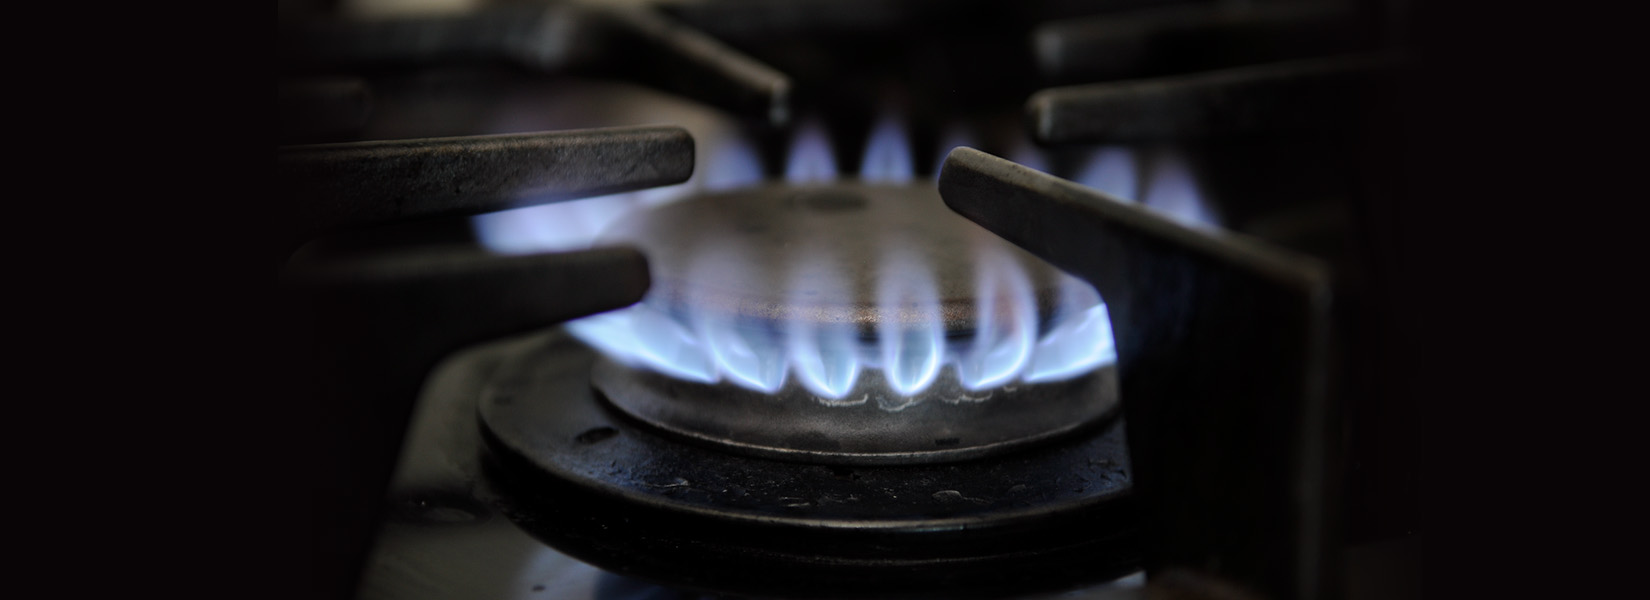 10.000 hogares barranquilleros se beneficiaron con conexiones subsidiadas de gas natural